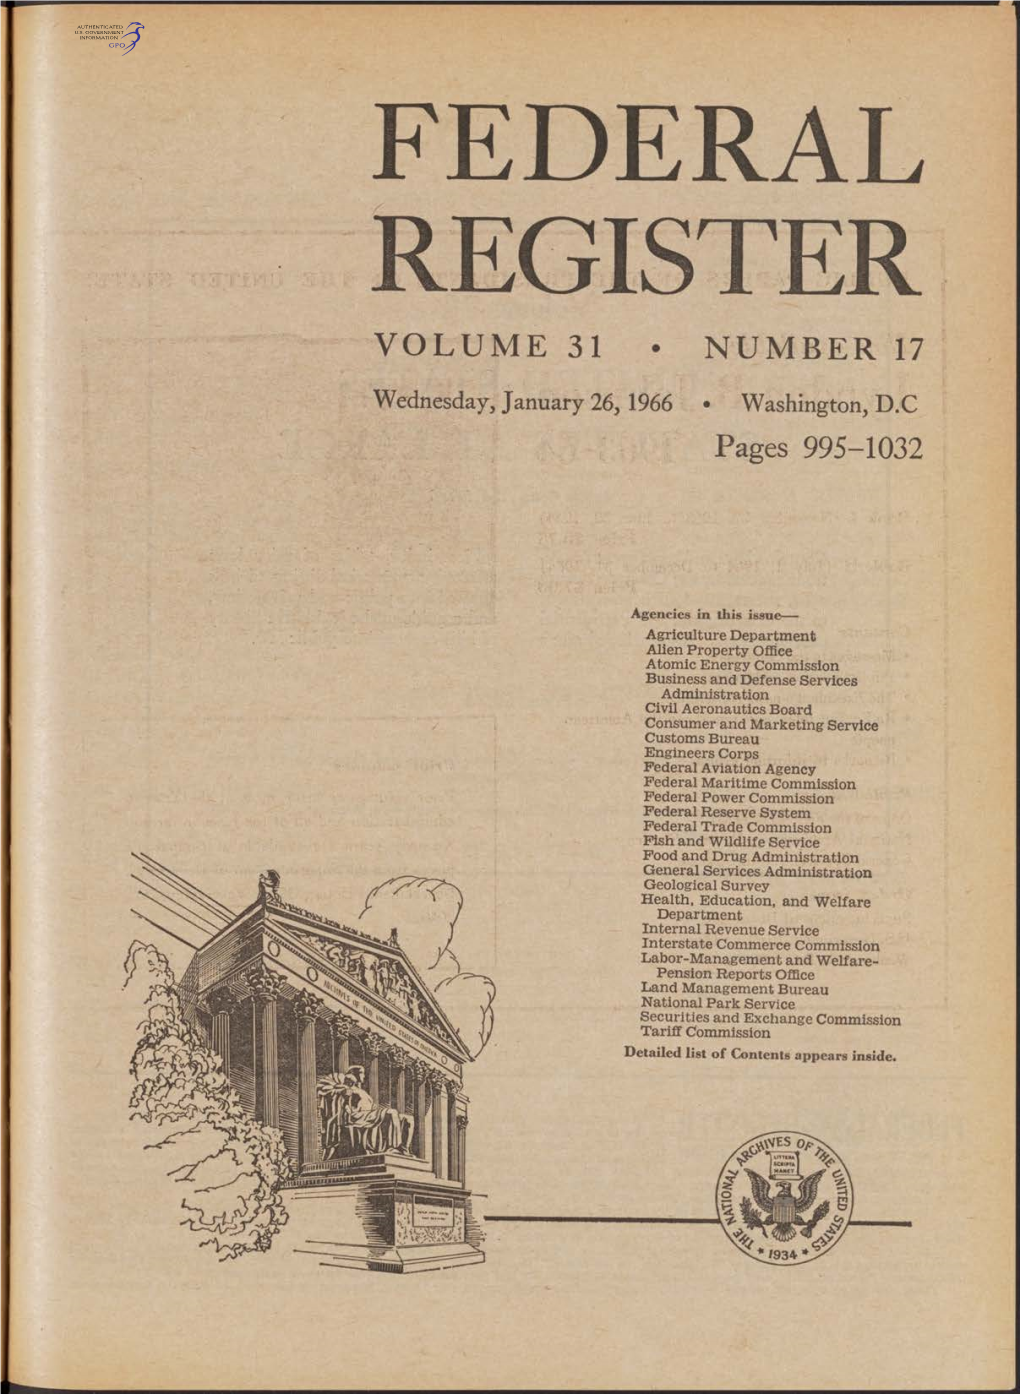 Federal Register Volume 31 • Number 17